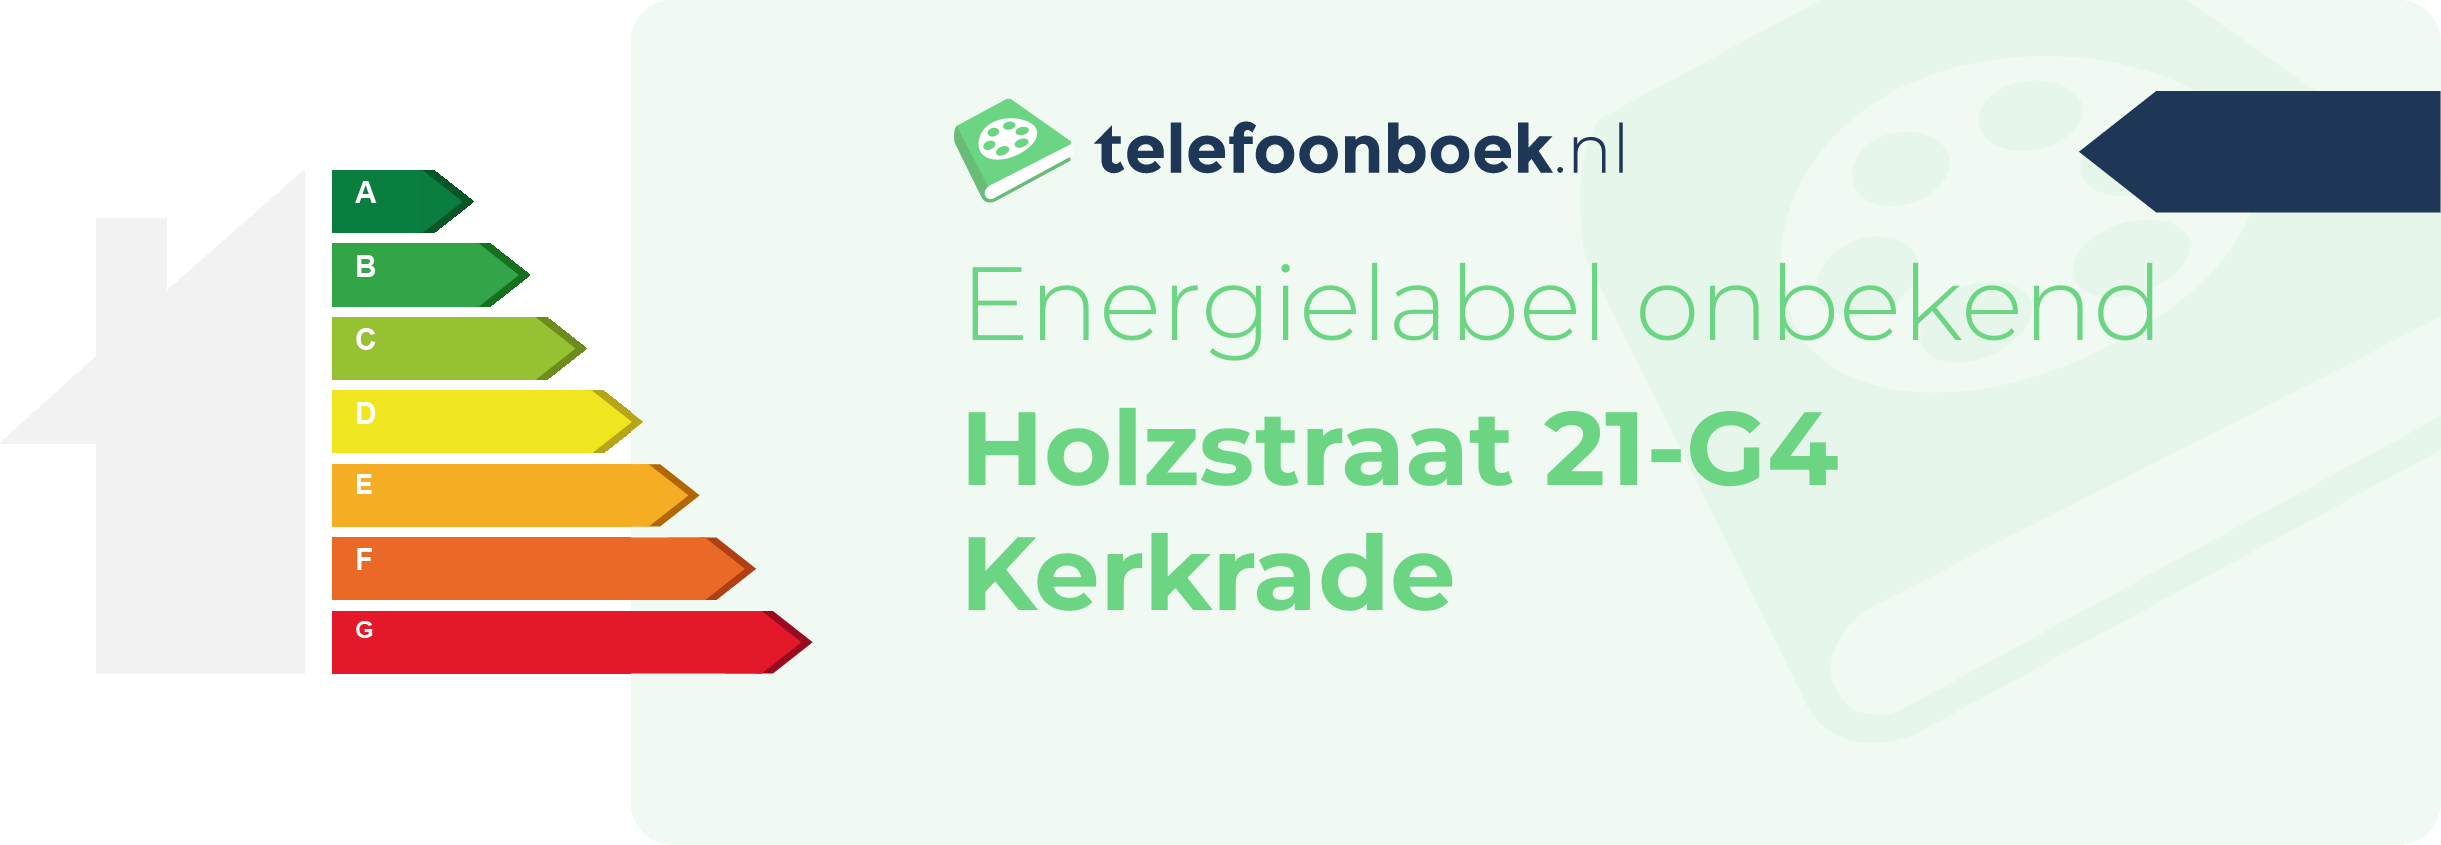 Energielabel Holzstraat 21-G4 Kerkrade